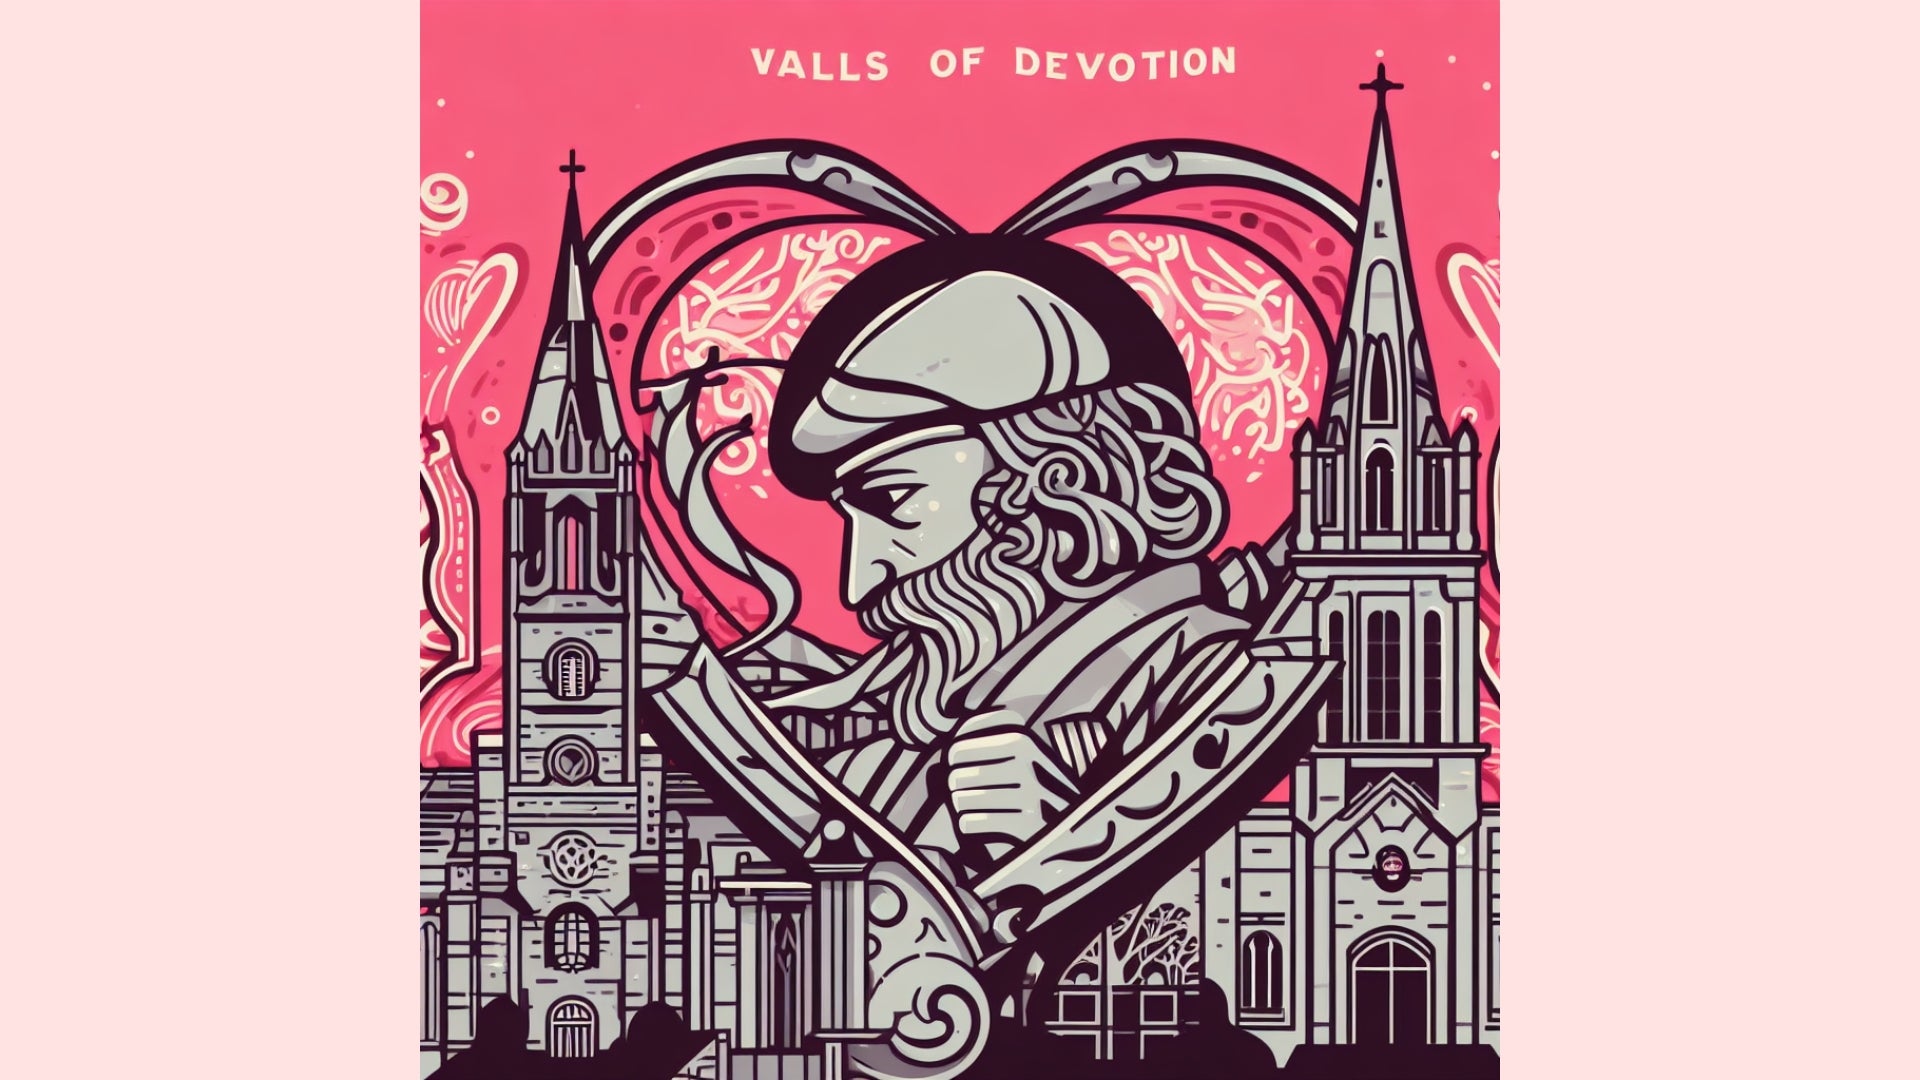 Derry's Walls of Devotion Valentine Card